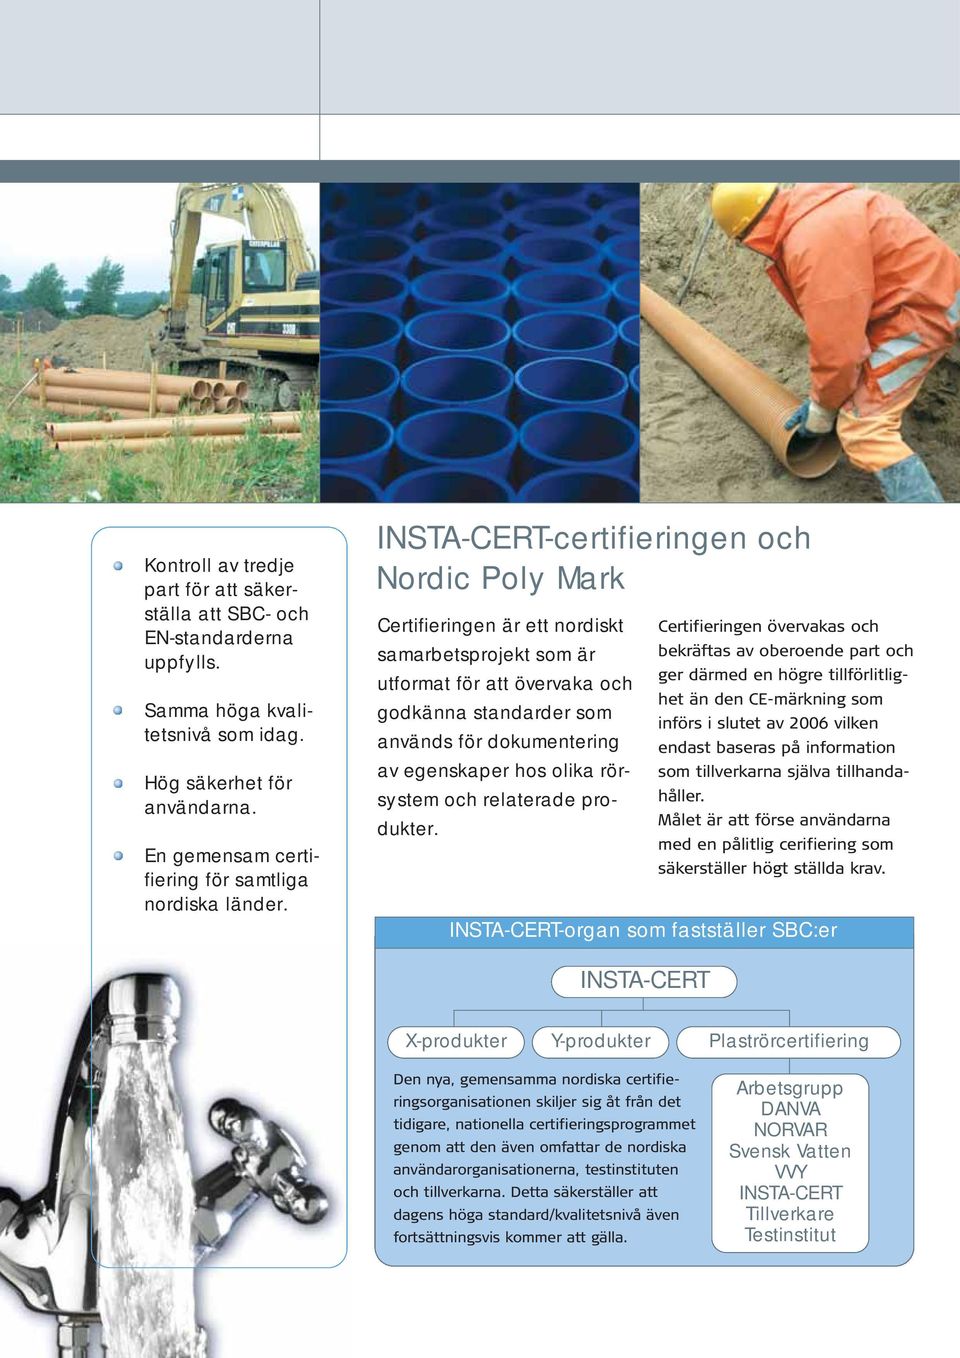 INSTA-CERT-certifieringen och Nordic Poly Mark Certifieringen är ett nordiskt samarbetsprojekt som är utformat för att övervaka och godkänna standarder som används för dokumentering av egenskaper hos